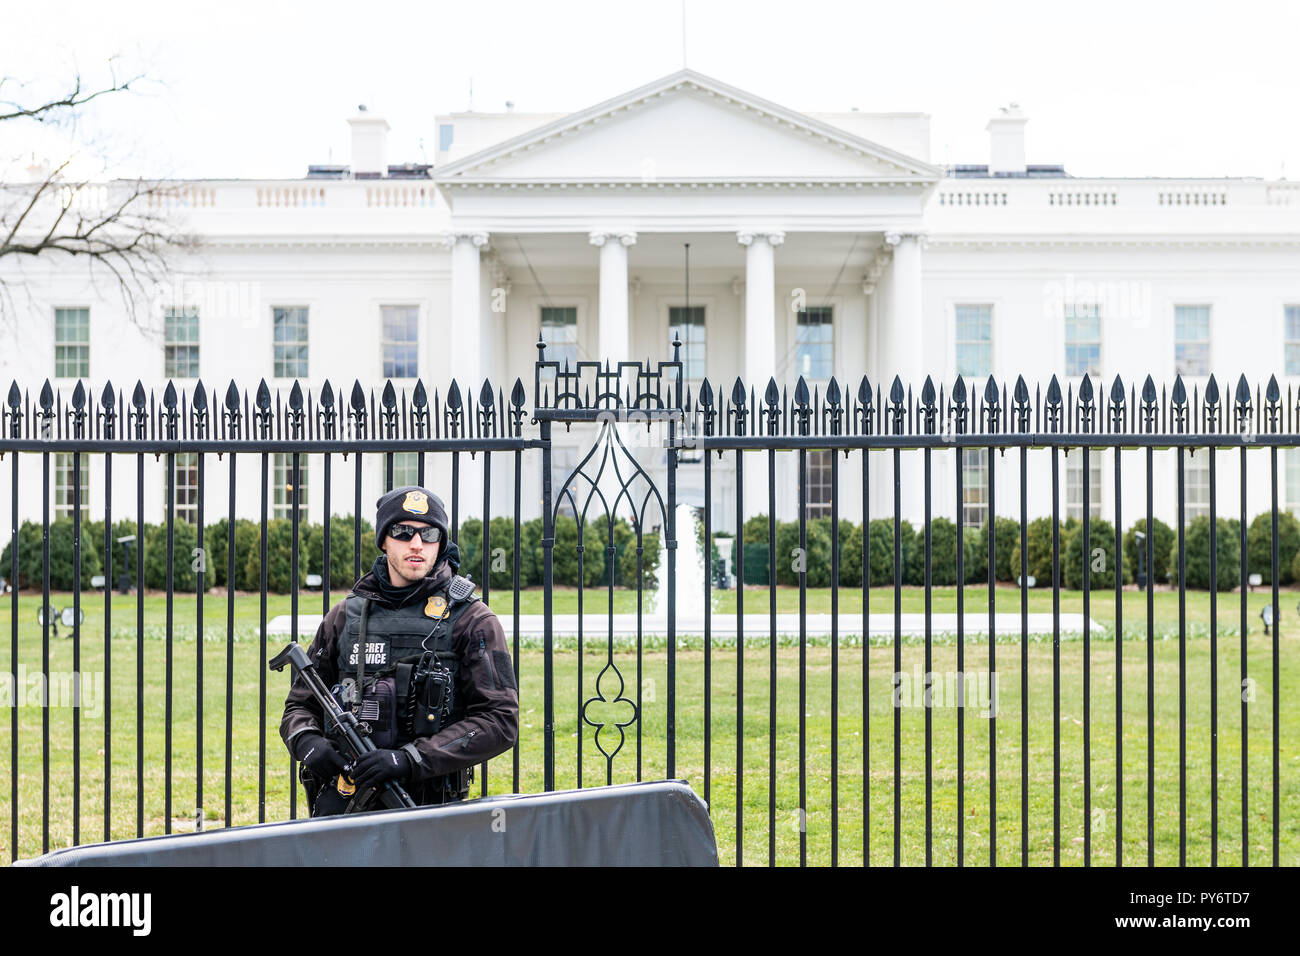 Washington DC, USA - 9 mars 2018 : Un Secret Service de sécurité, de la police garde l'homme debout, heureux les gens par le président de la Maison Blanche en construction Banque D'Images